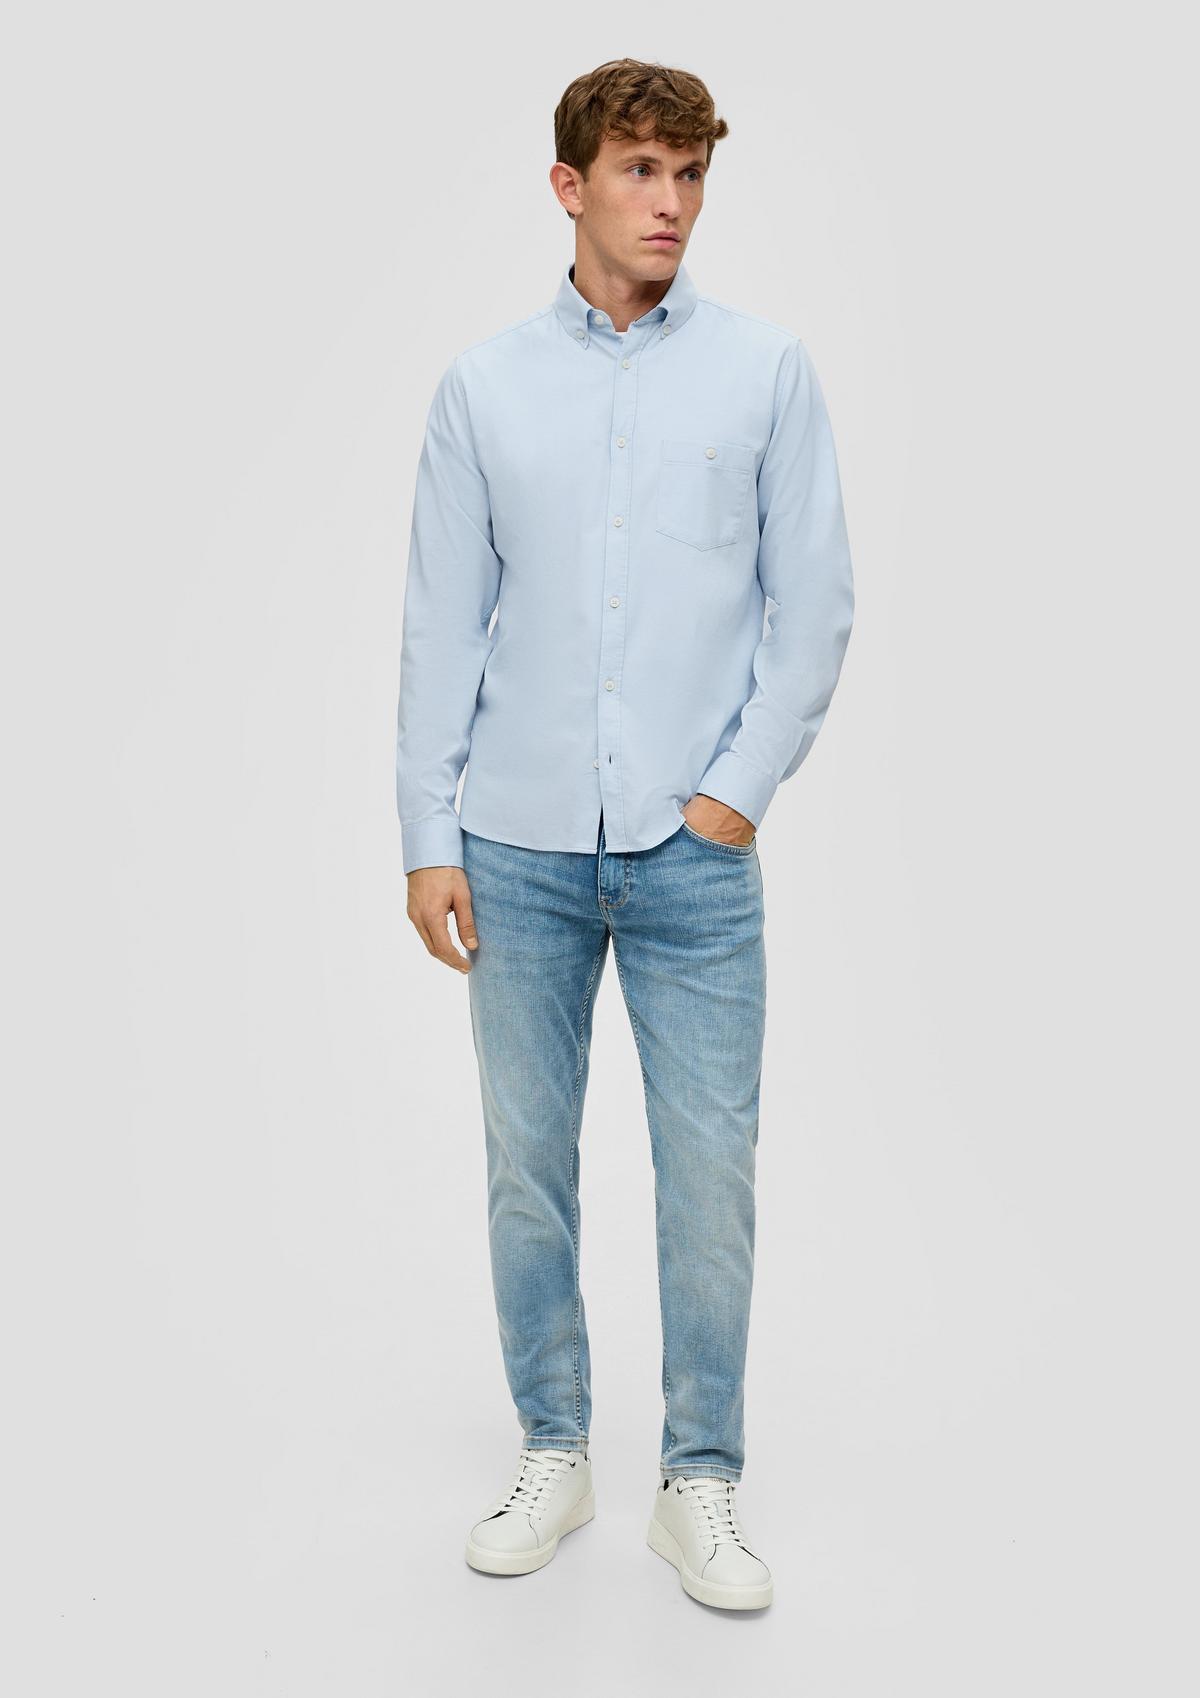 s.Oliver Slim : chemise à manches longues et poche-poitrine plaquée